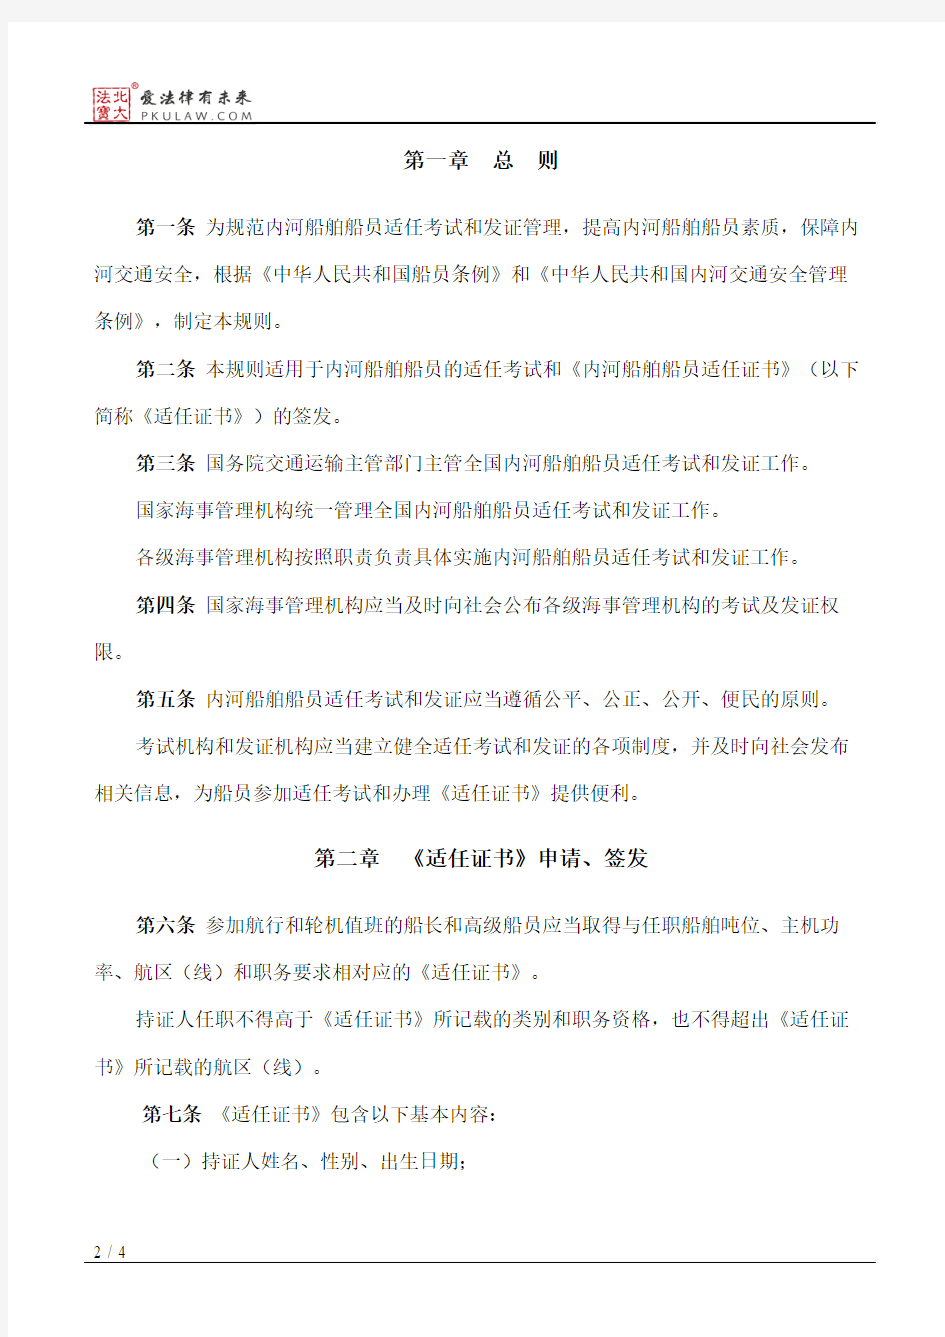 中华人民共和国内河船舶船员适任考试和发证规则(2015)